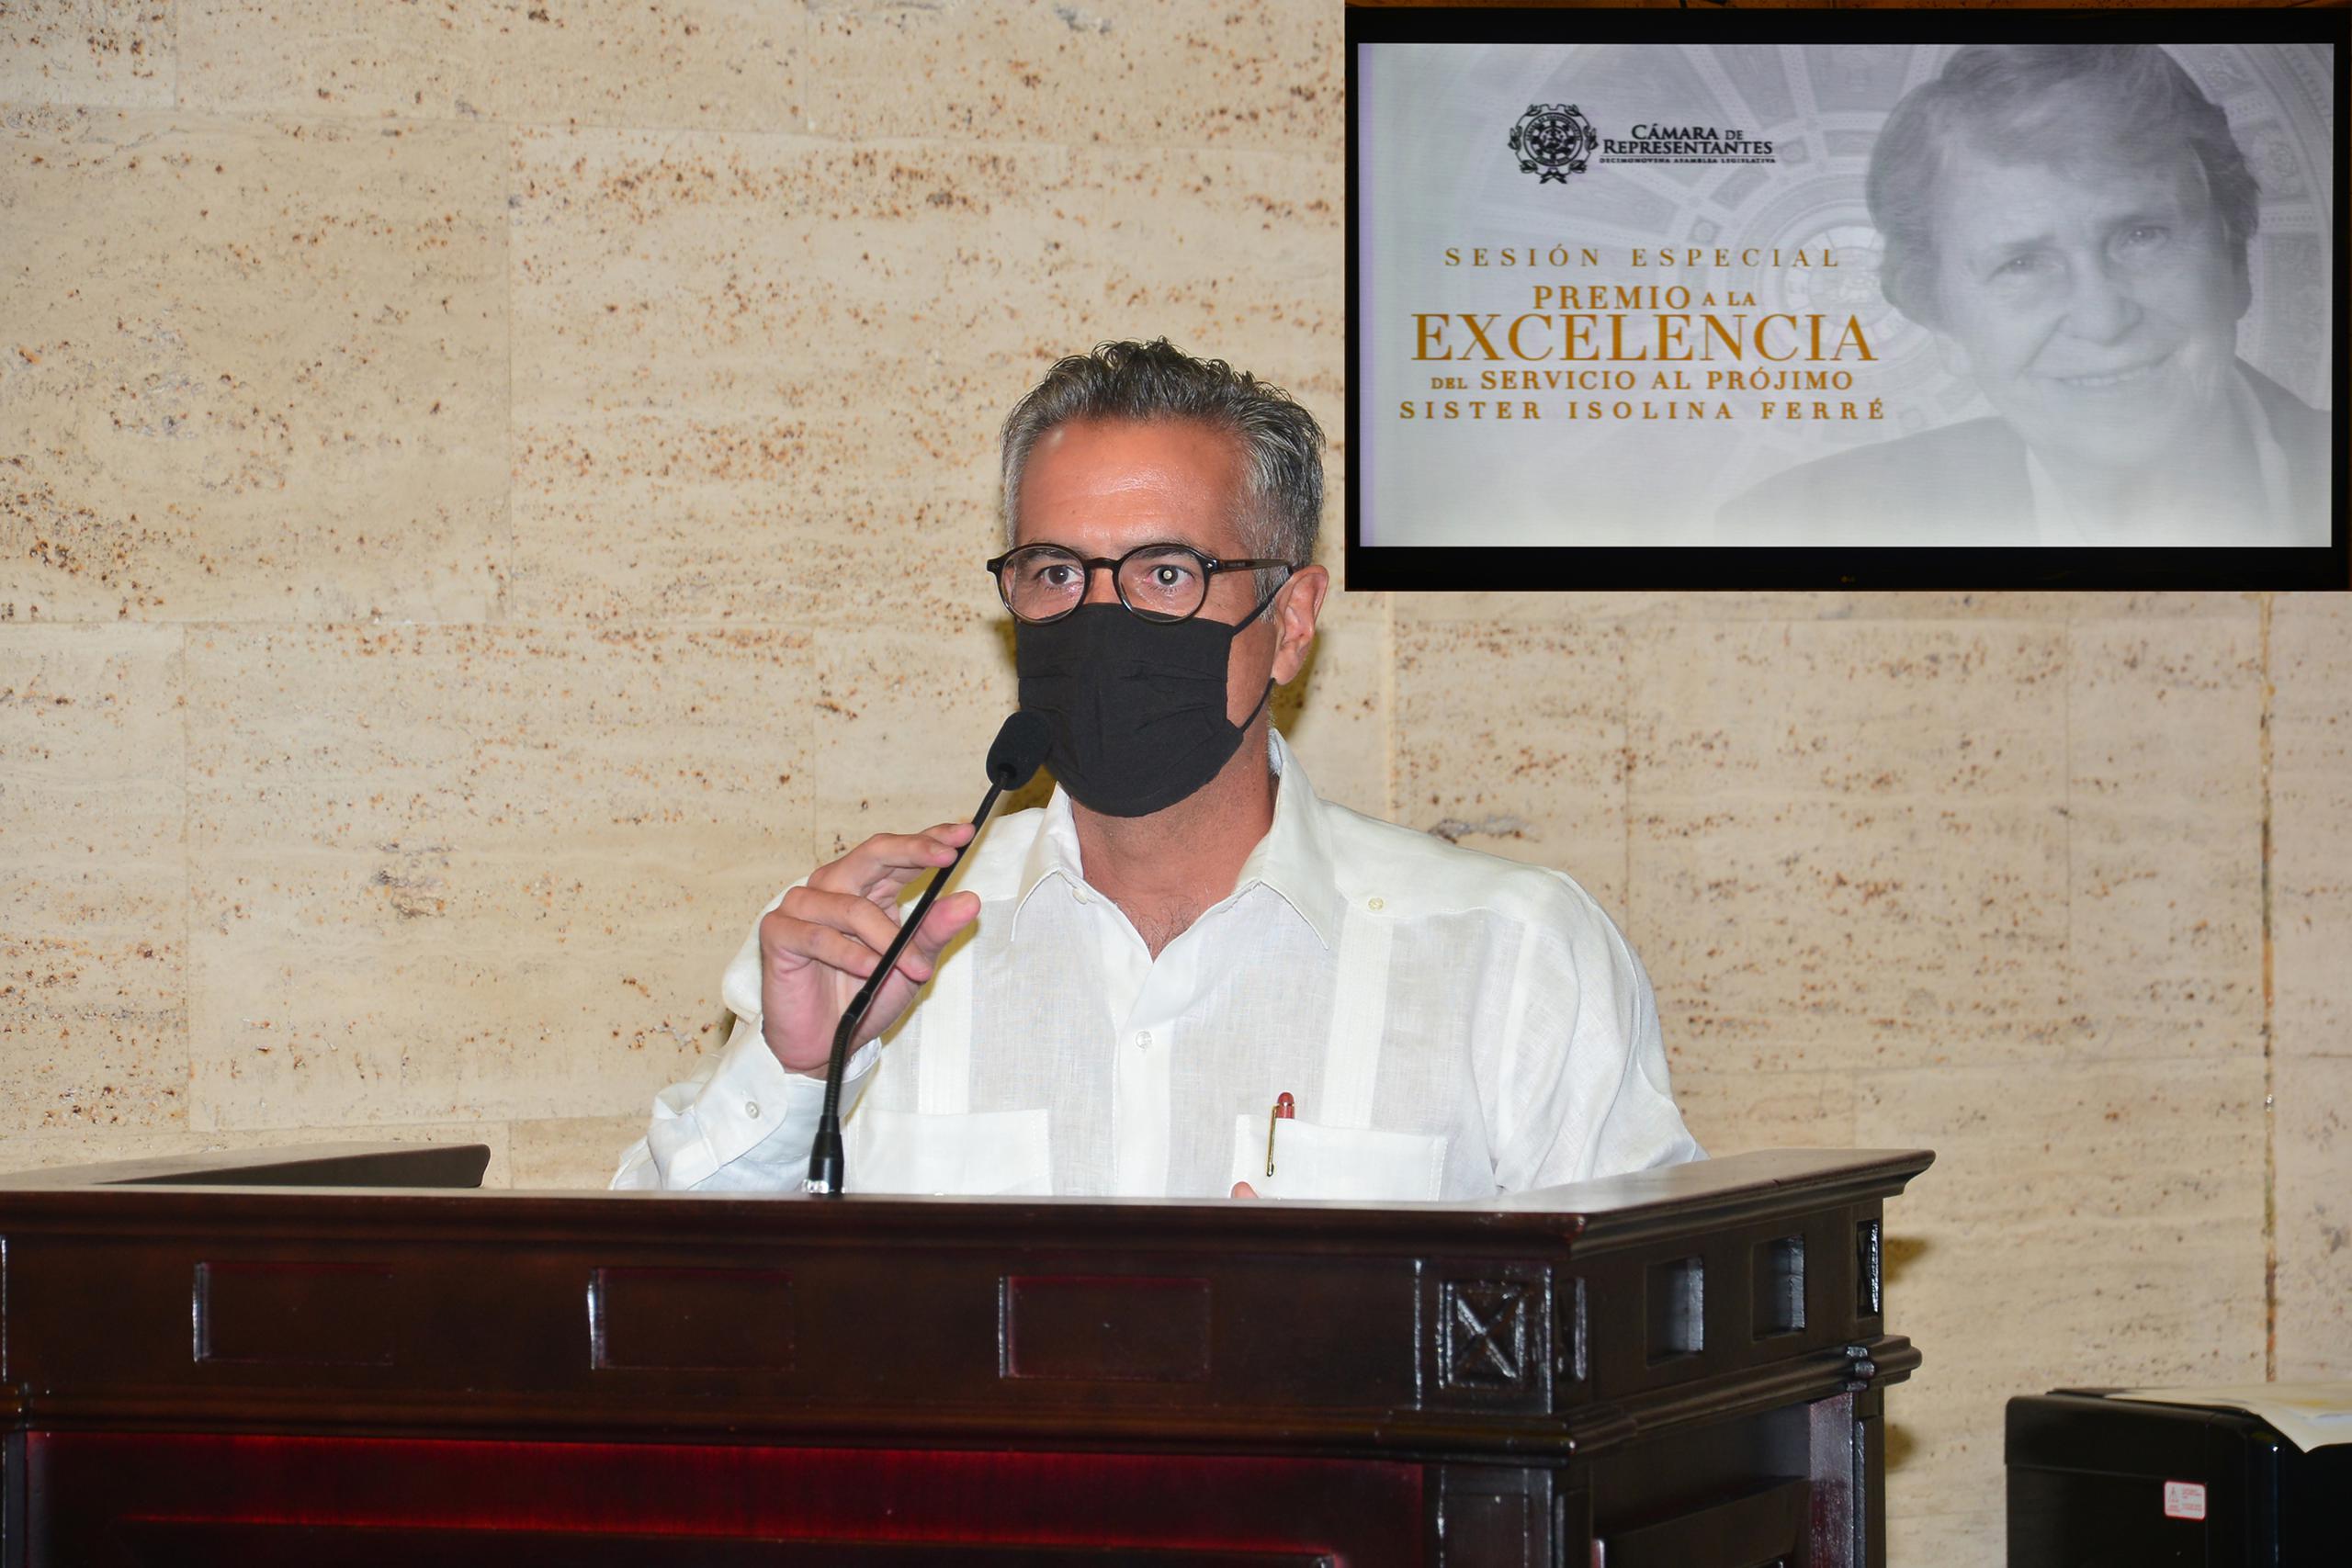 Luis Alberto Ferré-Rangel, presidente de la Junta de Directores de los CSIF, ofreció un mensaje durante la sesión especial de la Cámara con motivo de la entrega de los 19nos. Premios a la Excelencia de Servicio al Prójimo Sor Isolina Ferré.